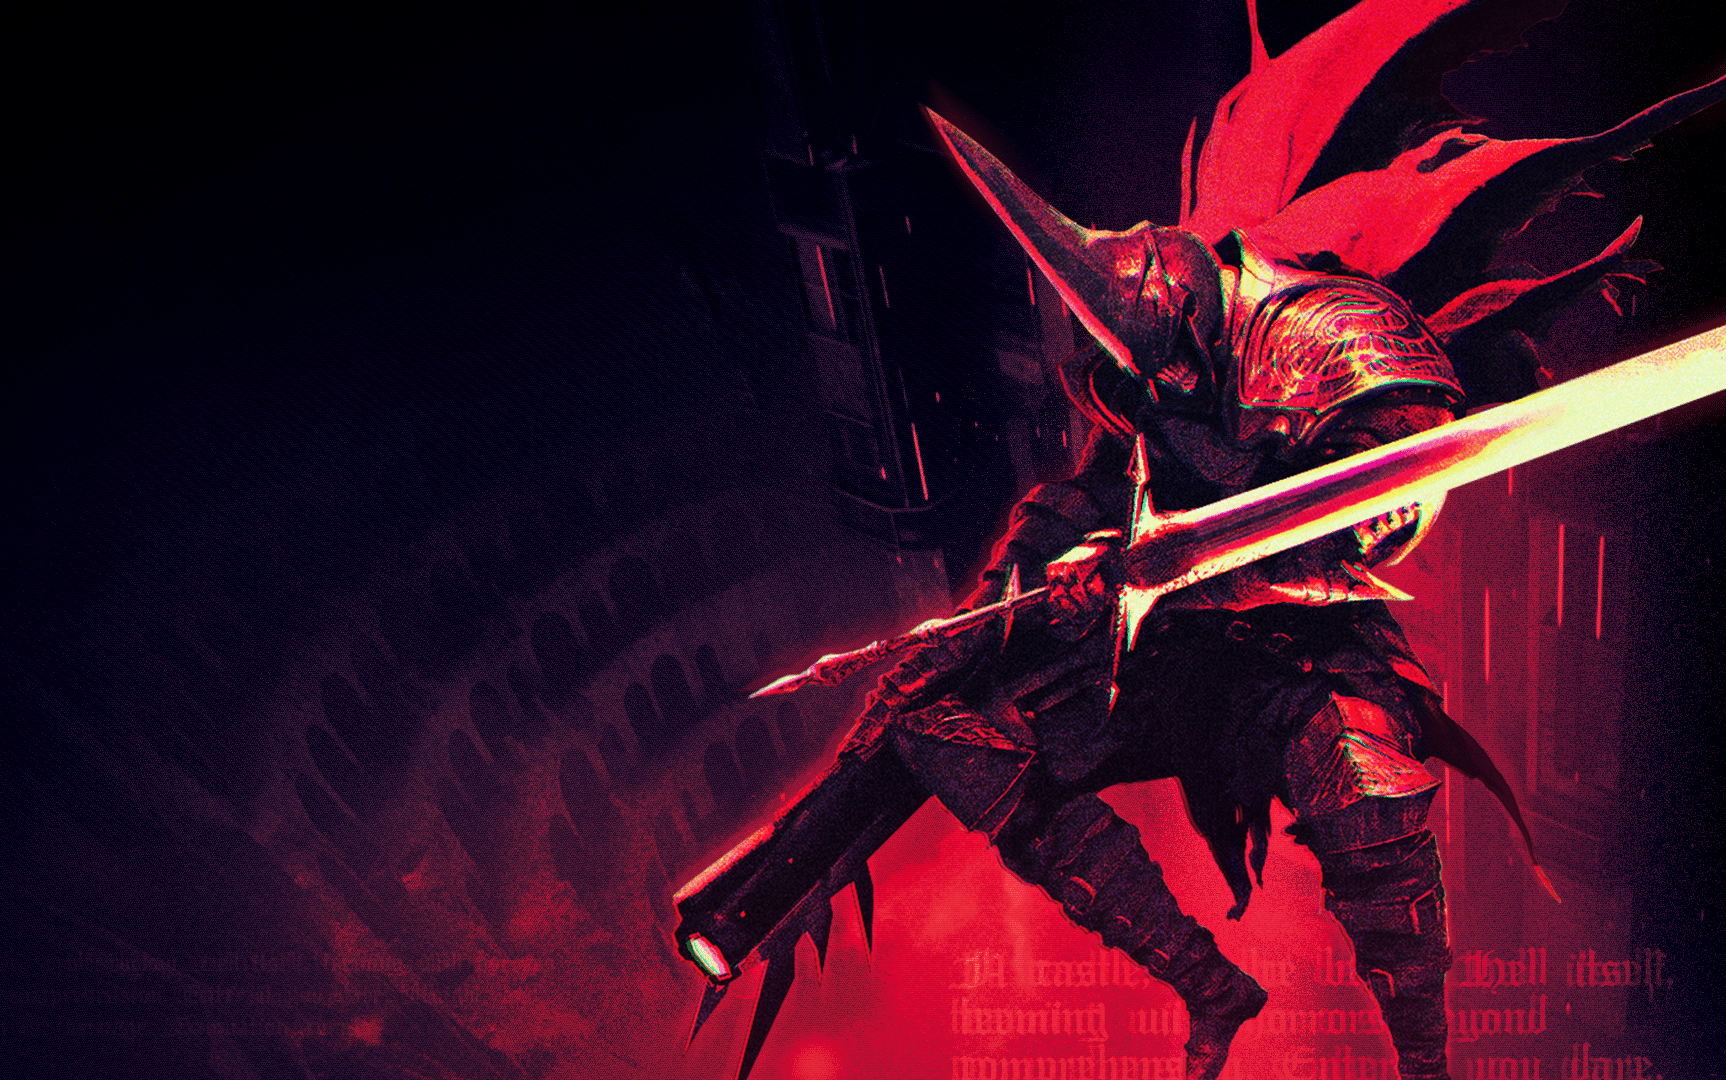 Kill Knight: "DOOM incontra Hades", è il gioco presentato da PlaySide al Triple-I Iniziative: caratteristiche, trailer e requisiti hardware